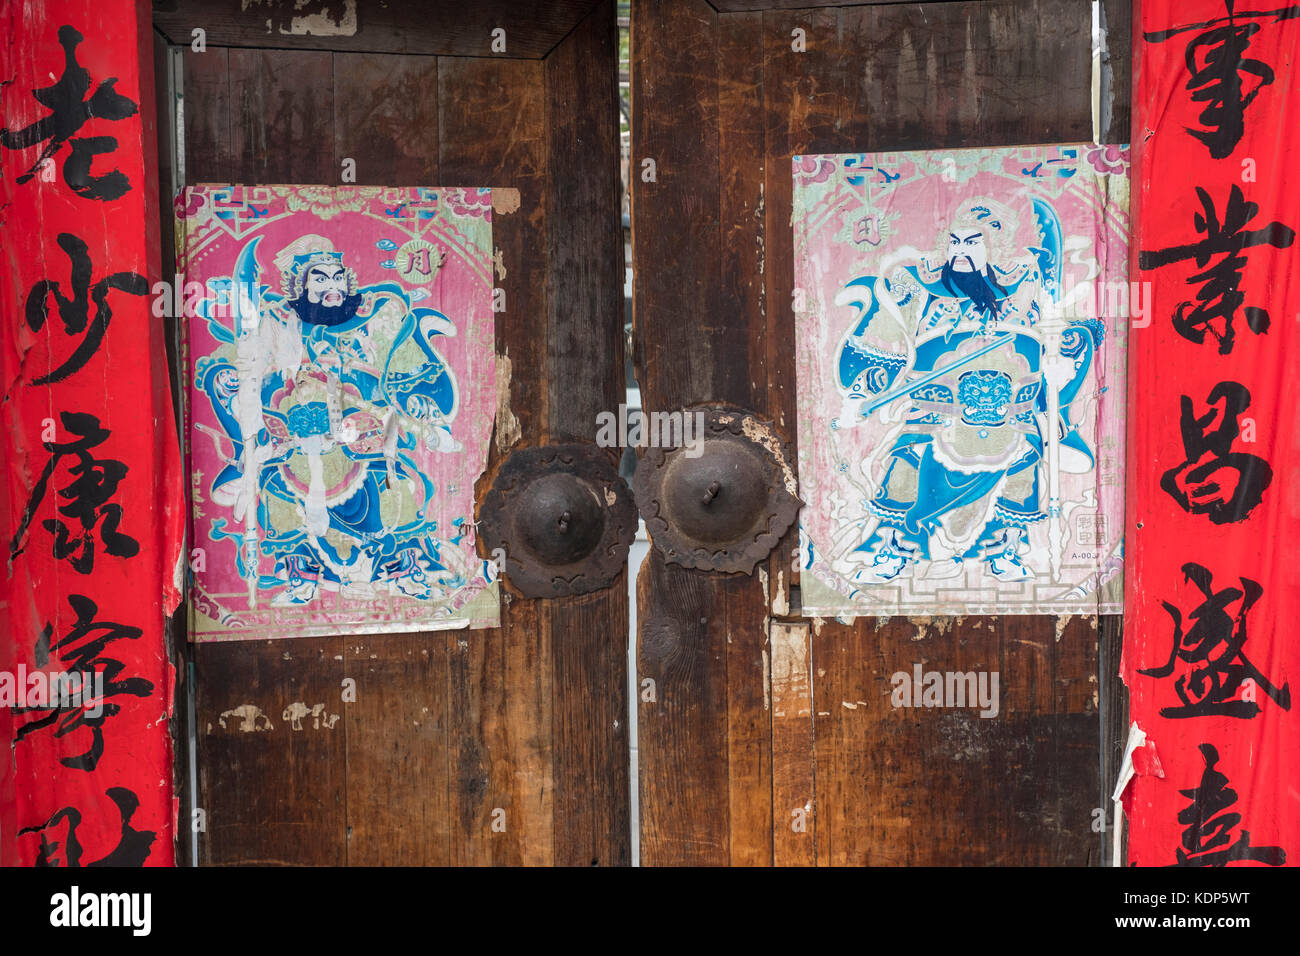 Una vecchia porta con il festival di primavera baciata, cinese porta-keepers e rusty battenti, in un hutong. Beijing in Cina. Foto Stock